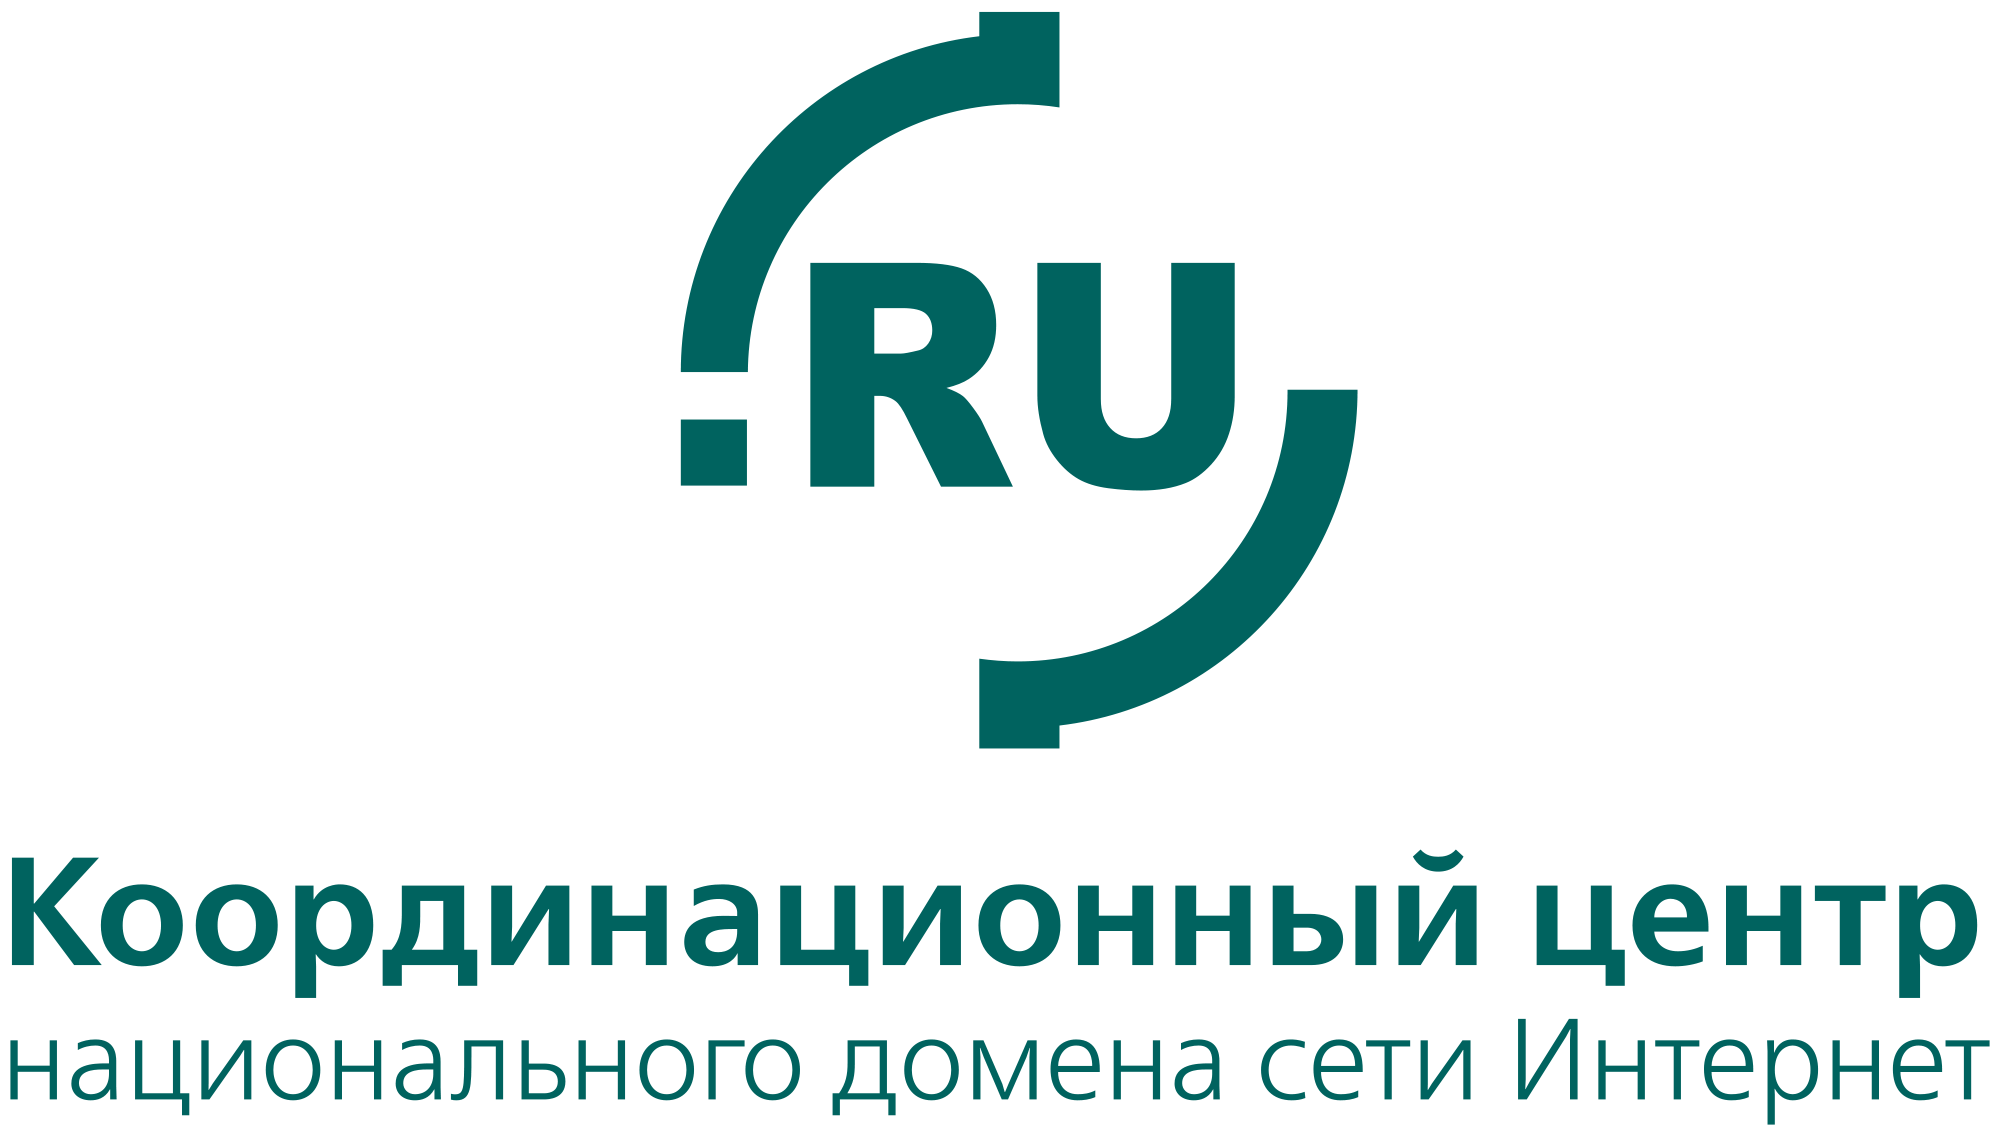 Координационный центр национального домена сети Интернет - Координационный центр доменов .RU/.РФ